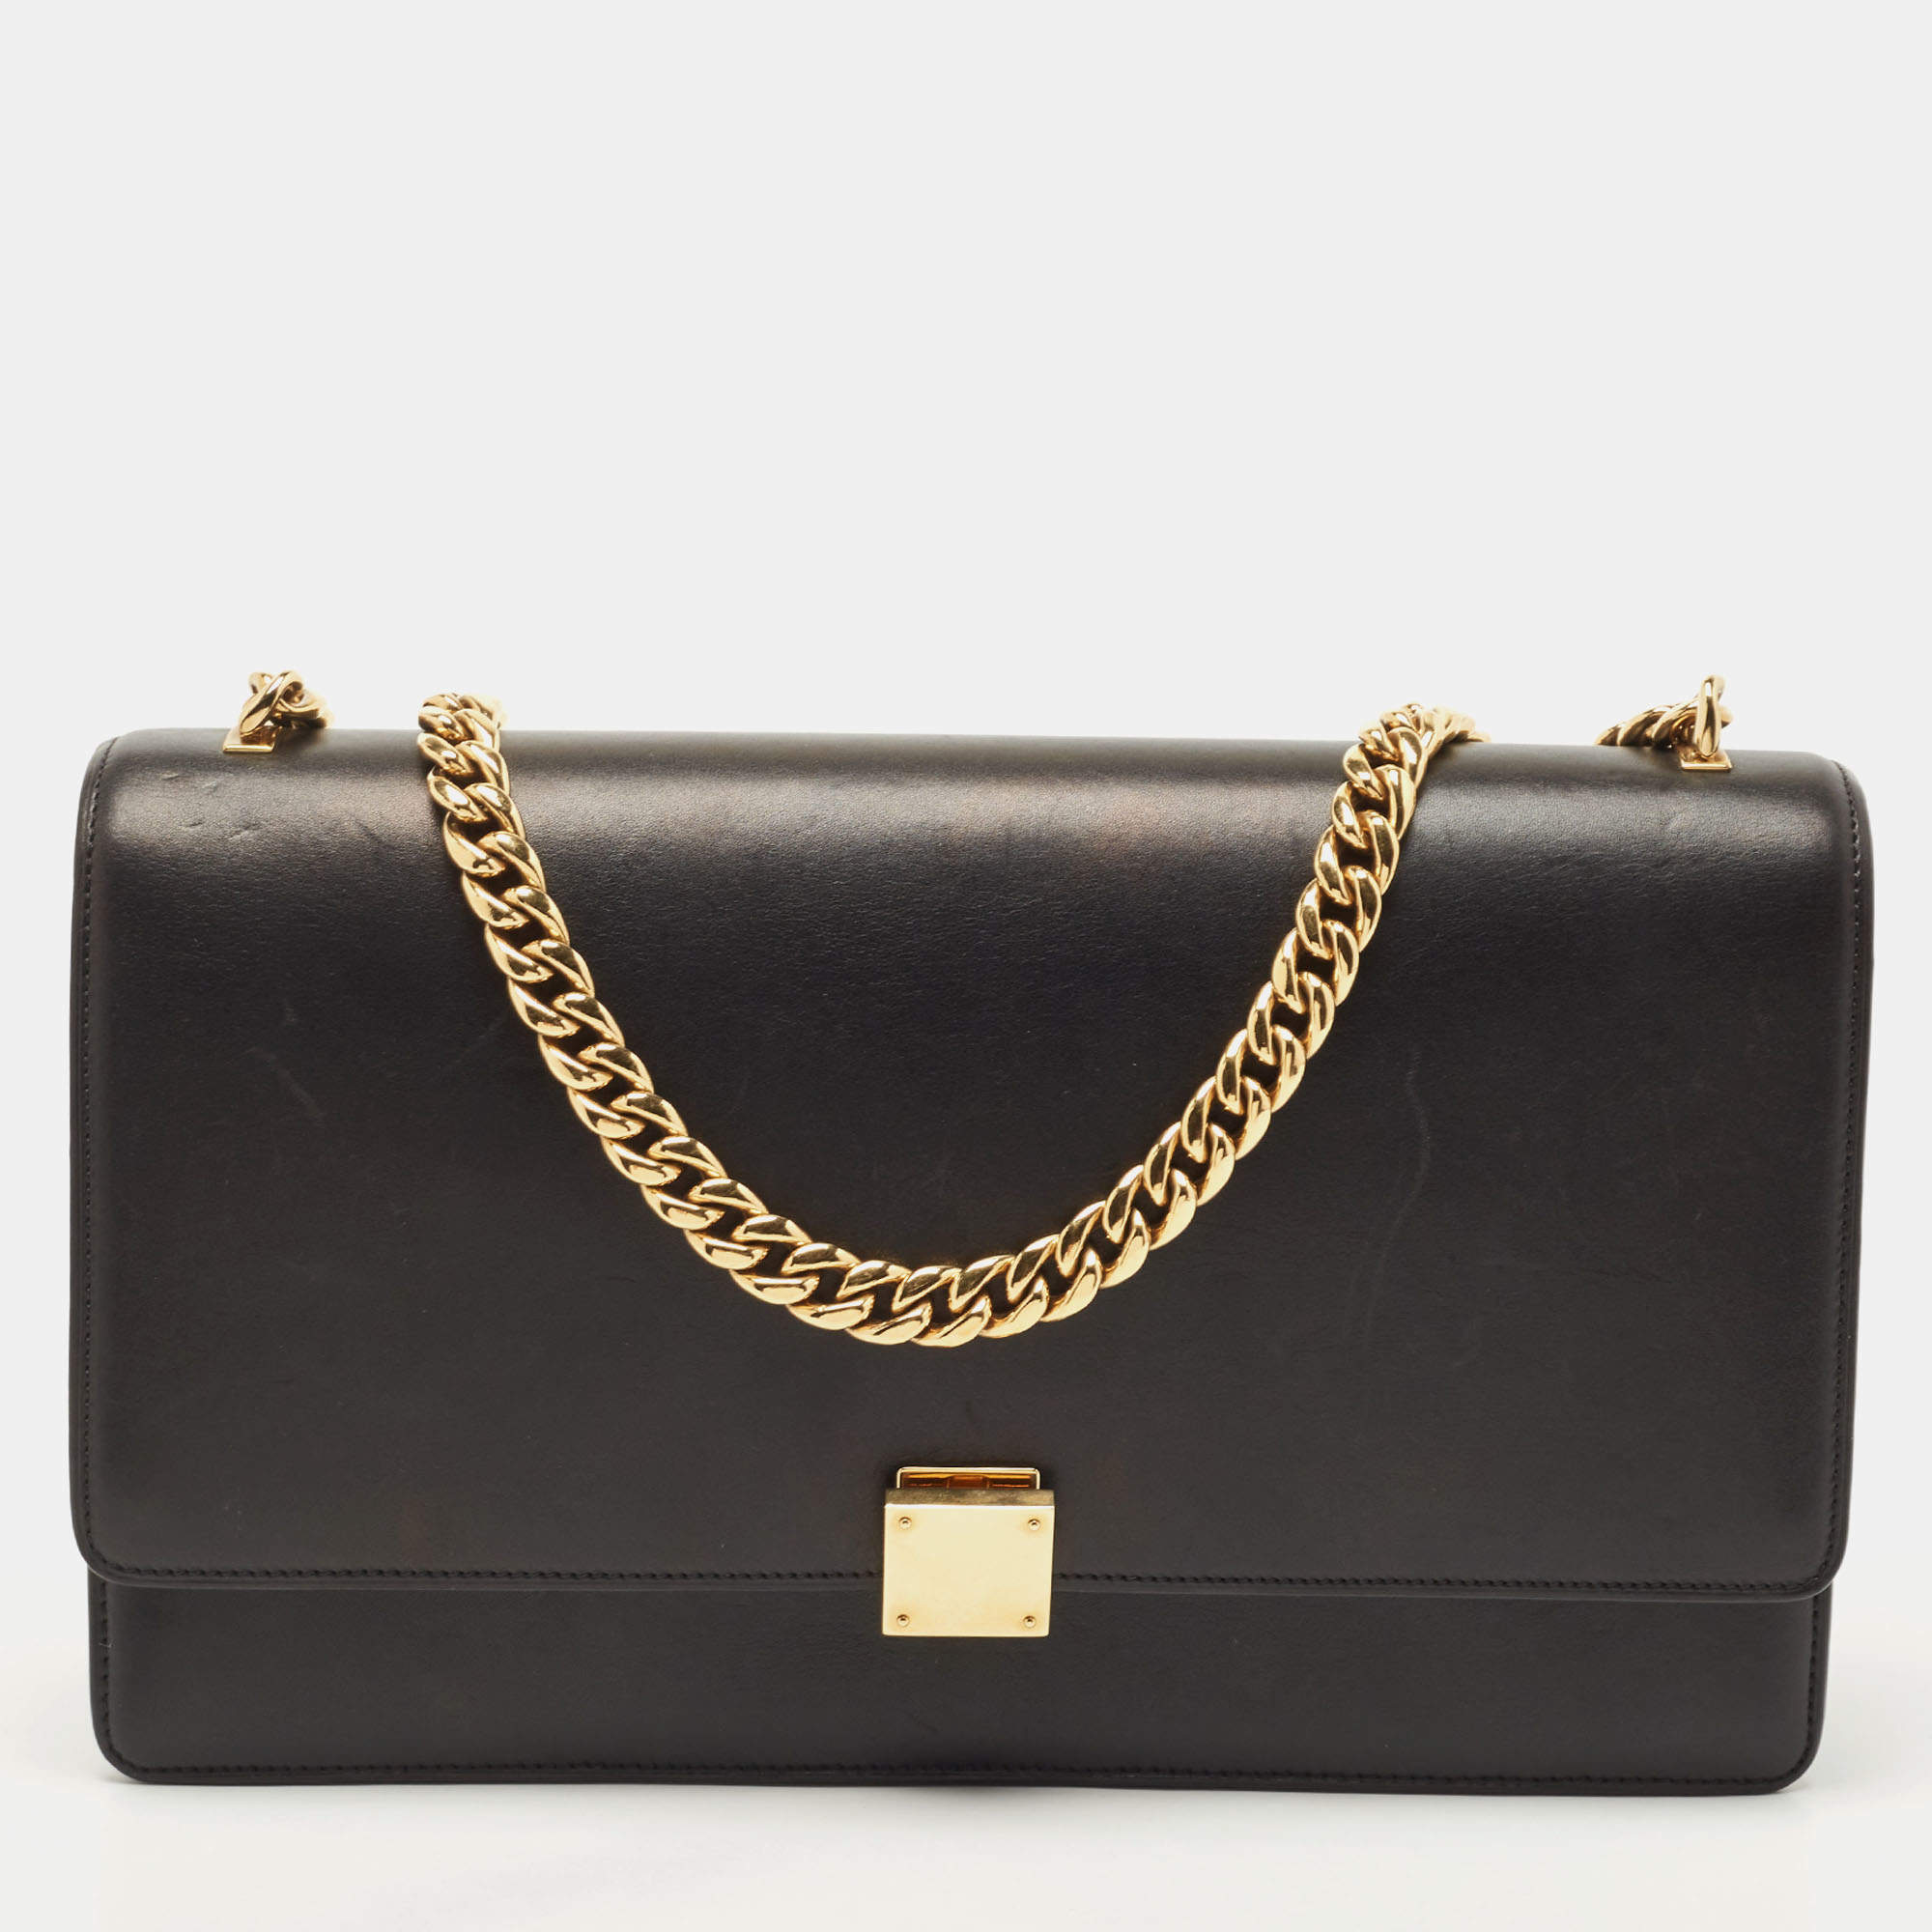 Celine Black Leather Medium Case Chain Flap Shoulder Bag